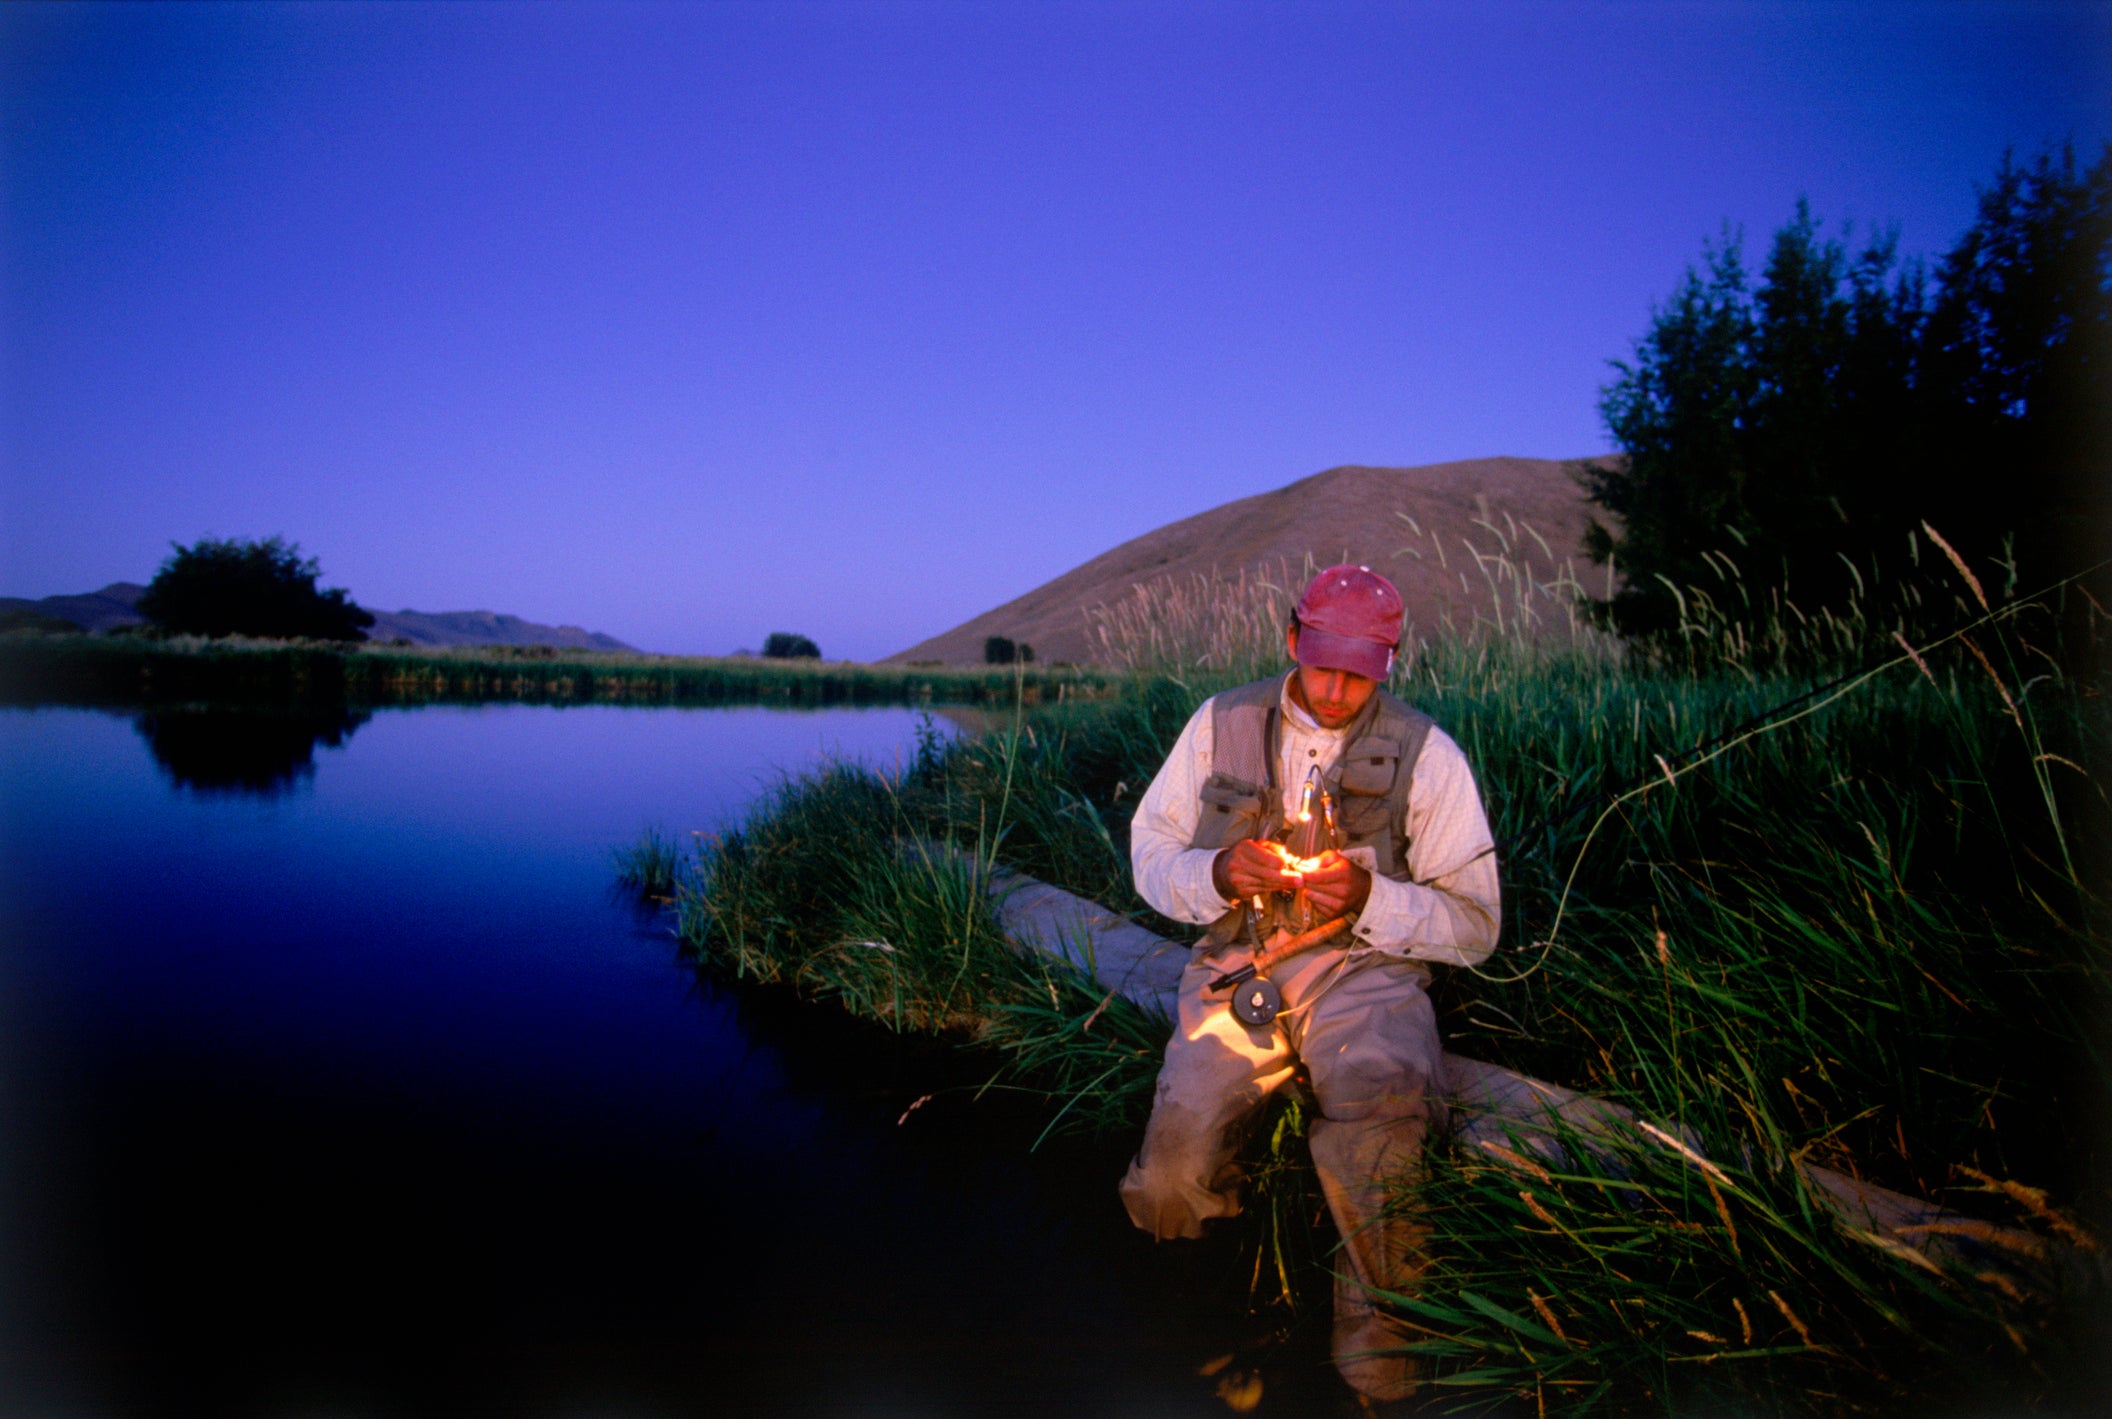 Trout man fishing at night, Idaho